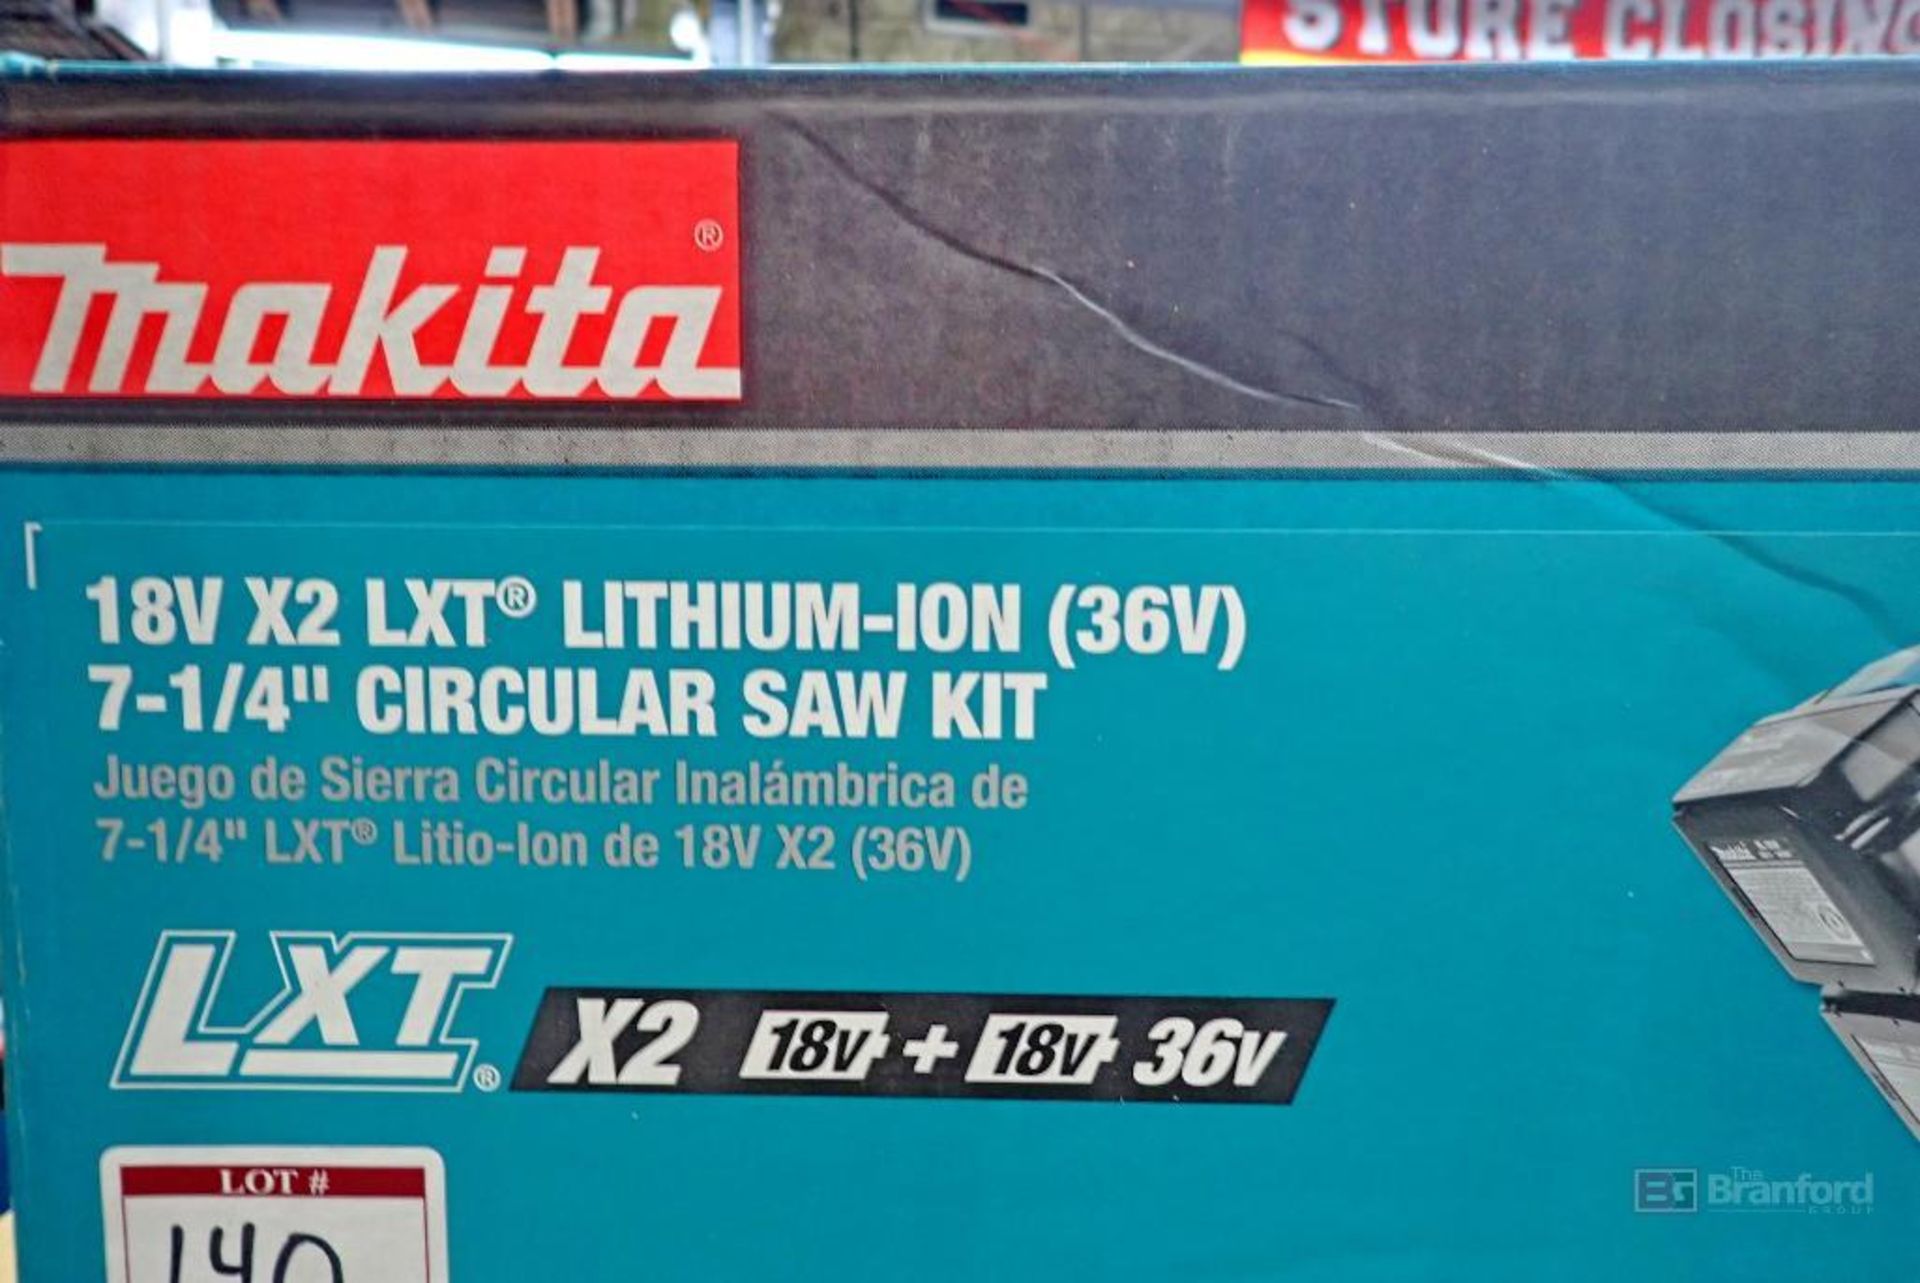 Makita 18V X2 LXT Lithium-Ion (36V) 7-1/4" Circular Saw Kit - Image 2 of 5